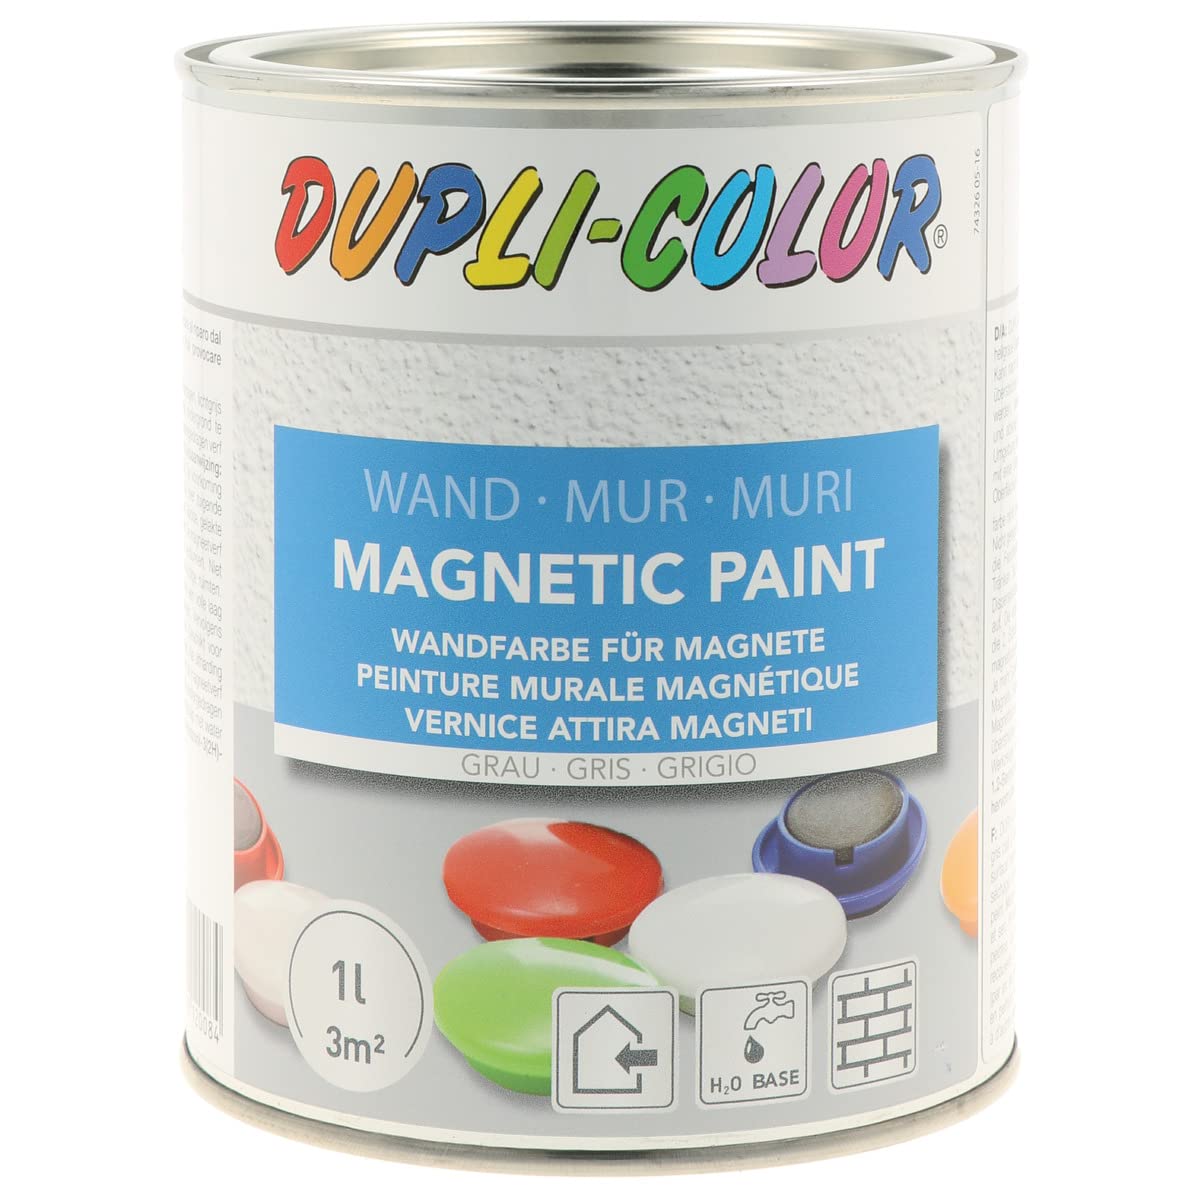 DUPLI-COLOR 120084 Magnetic Paint grau 1000ml, hellgrau